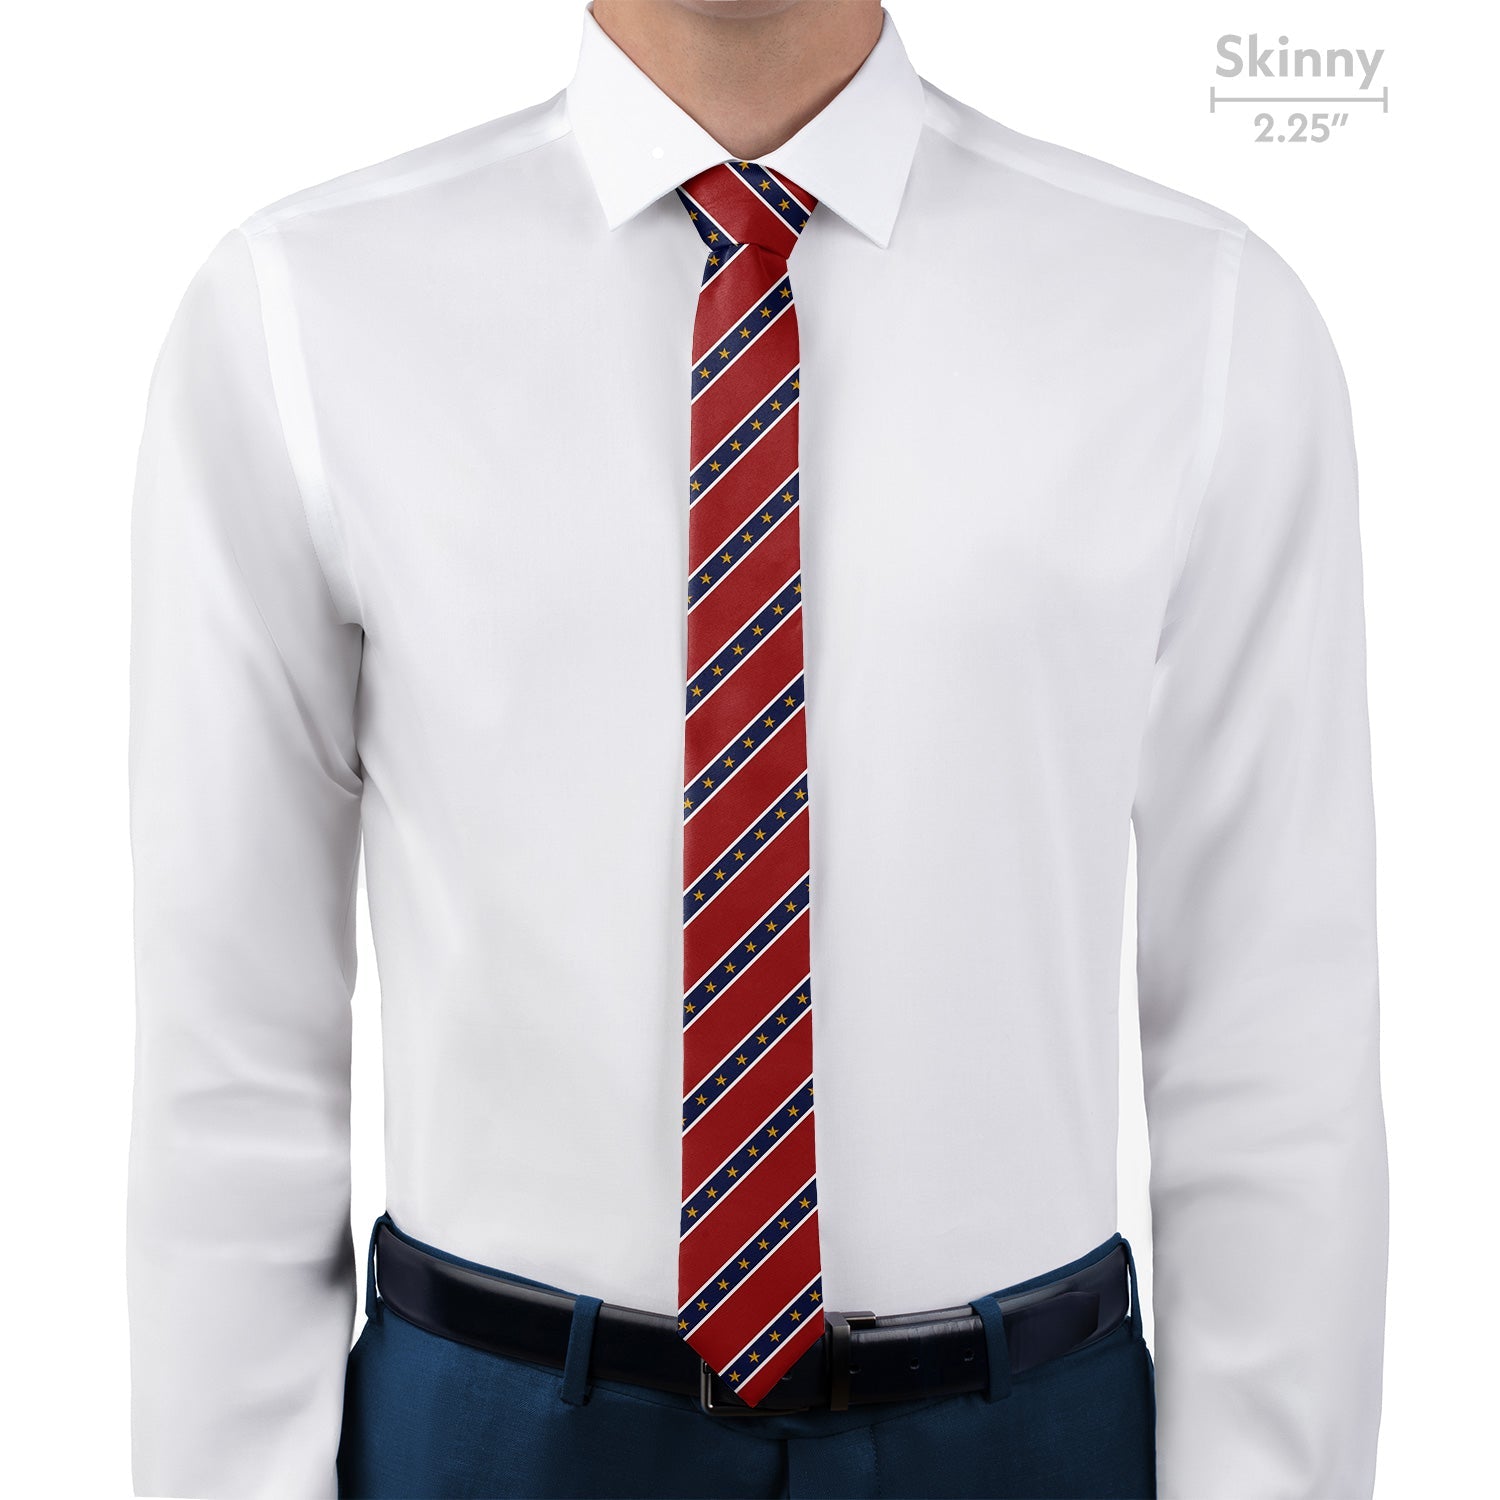 Stars in Stripes Necktie - Skinny - Knotty Tie Co.